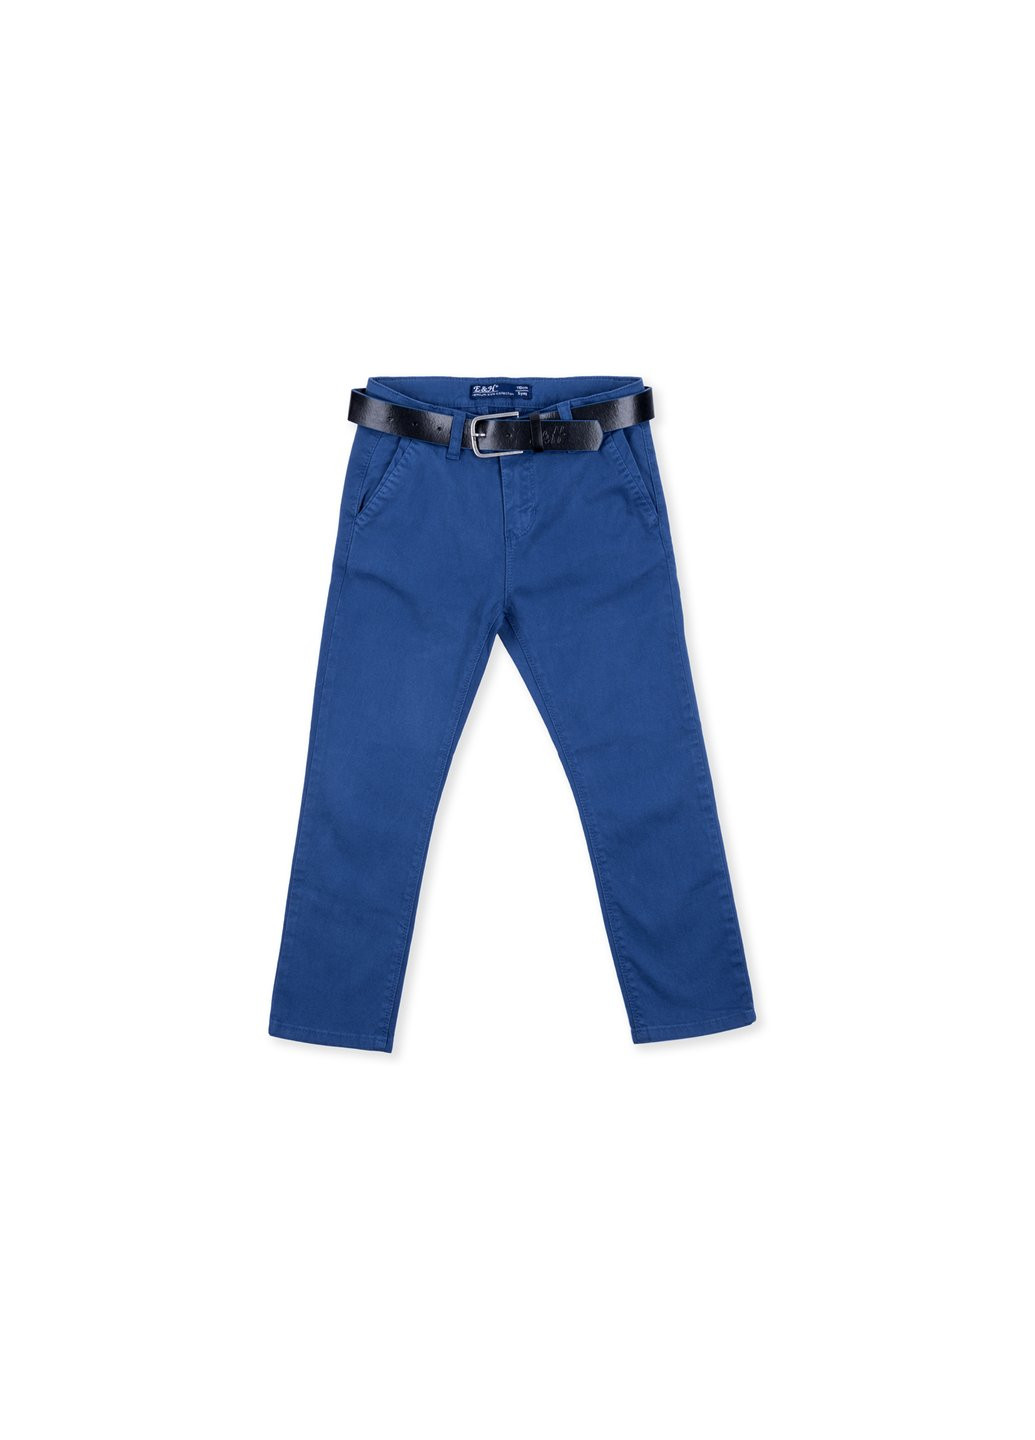 Индиго демисезонные джинсы зауженные индиго (oz-17604-116b-indigo) Breeze